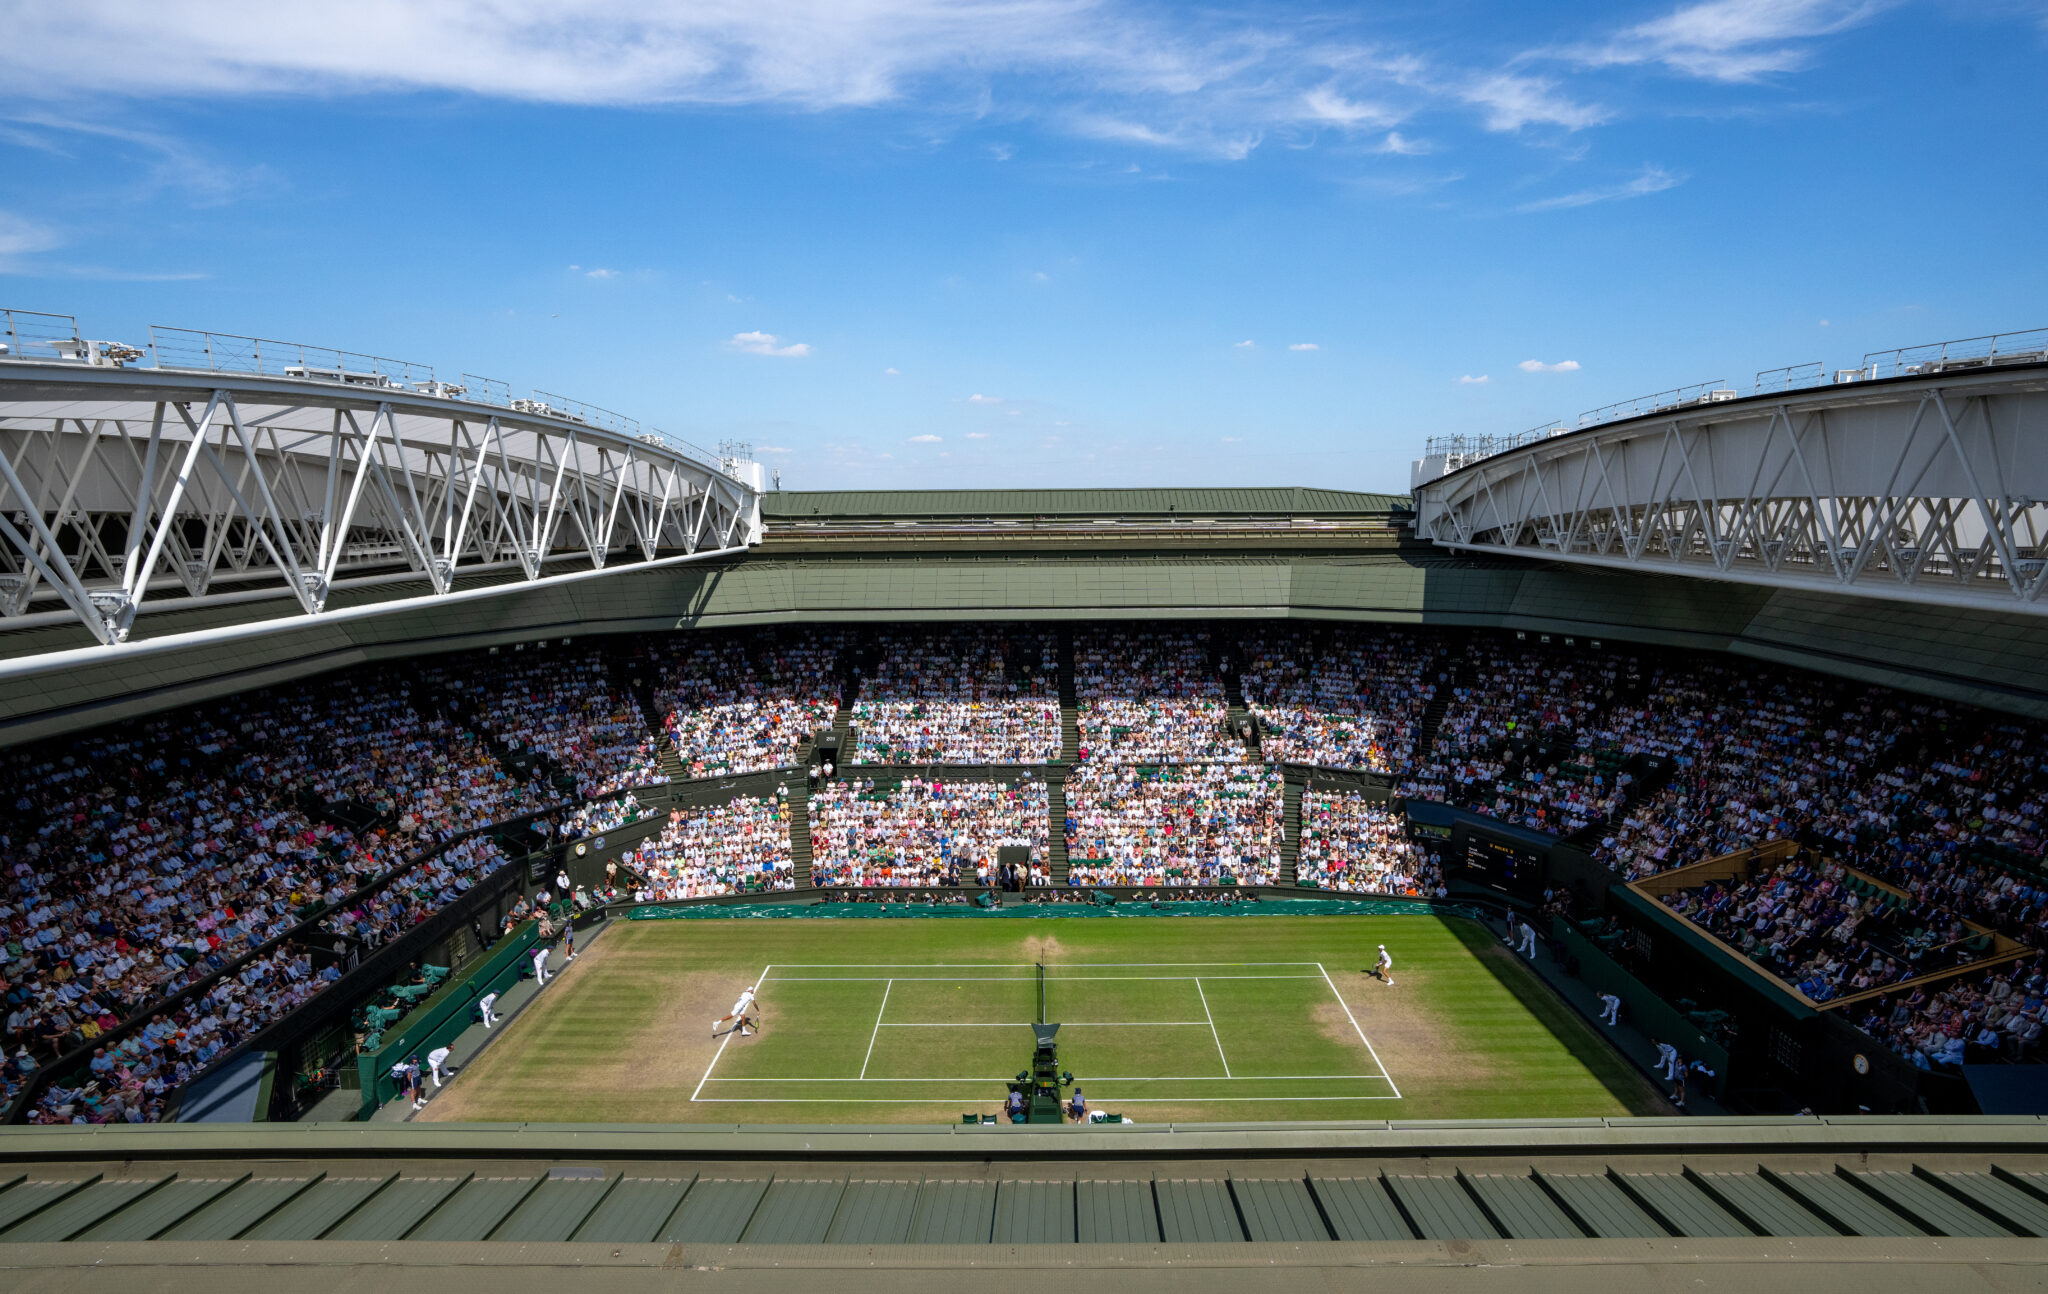 Image of the tennis court at Wimbledon